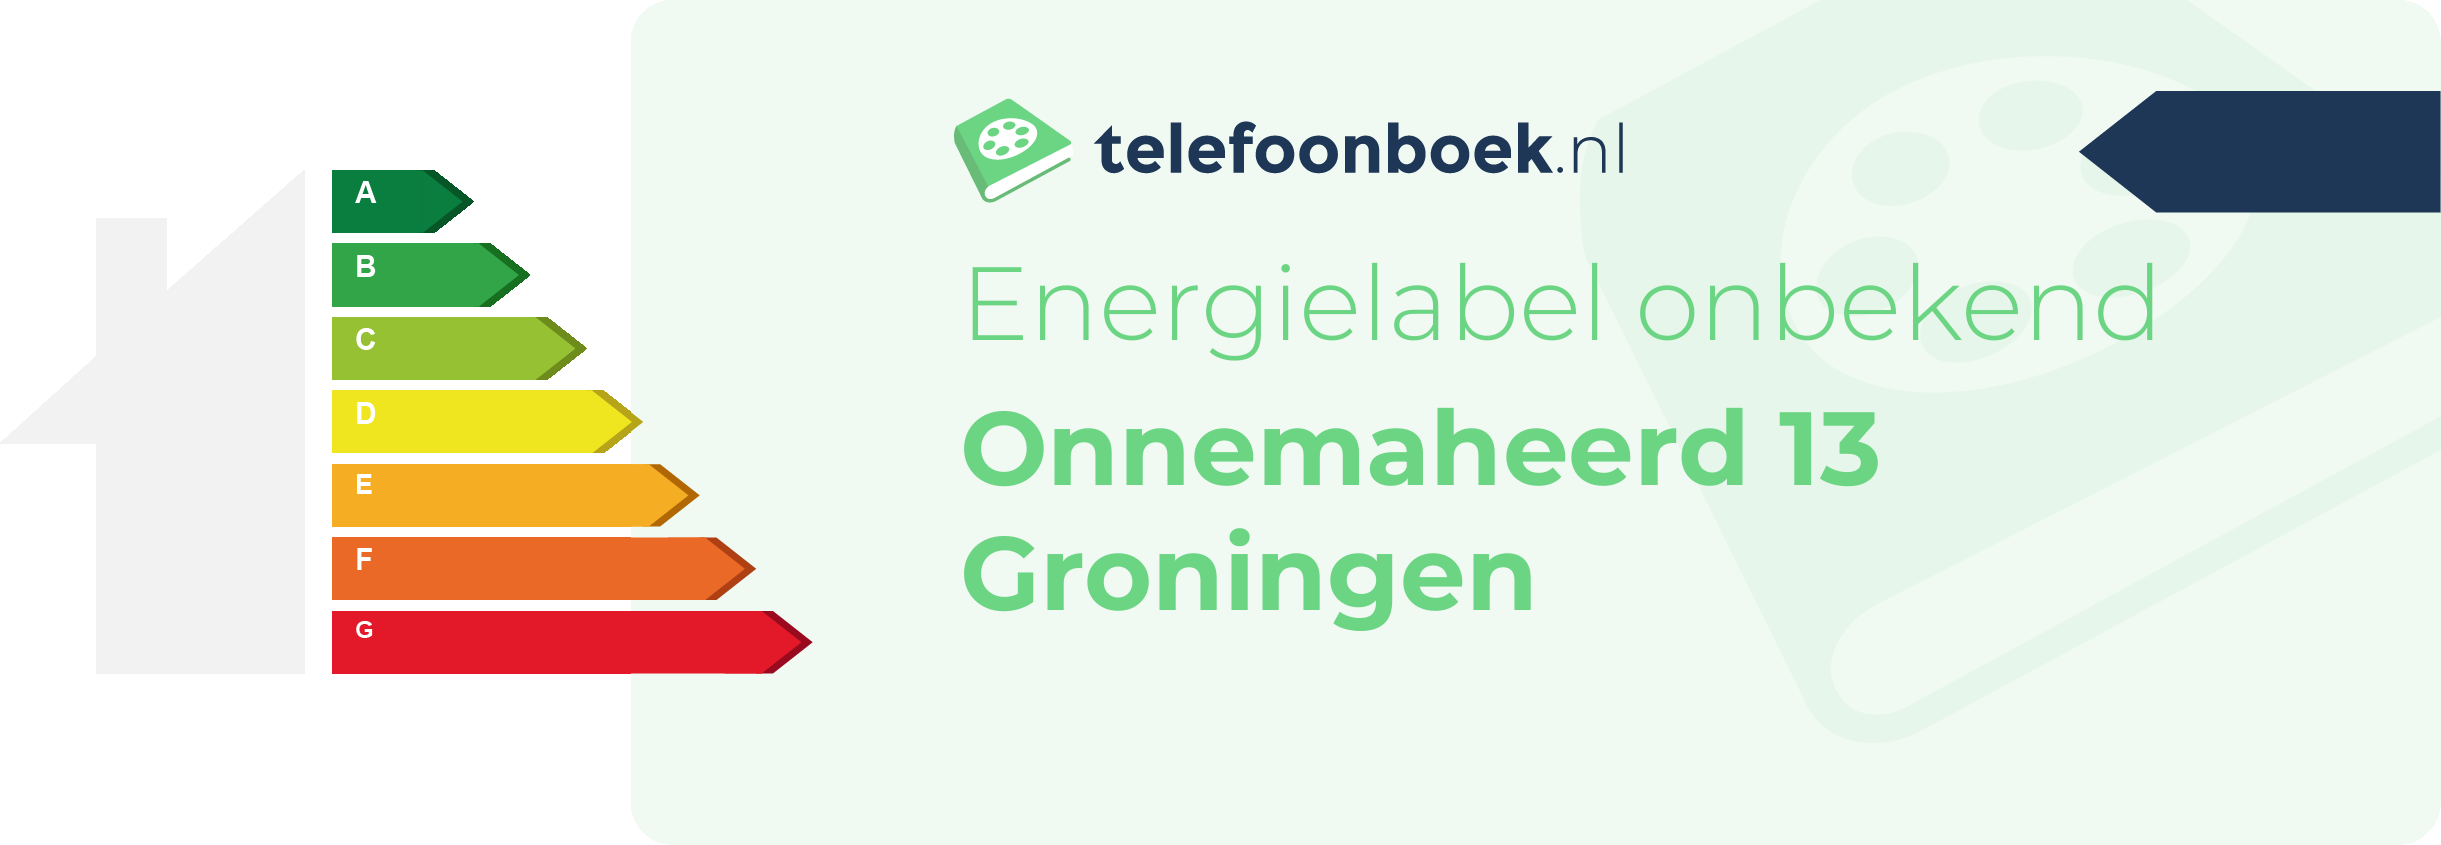 Energielabel Onnemaheerd 13 Groningen